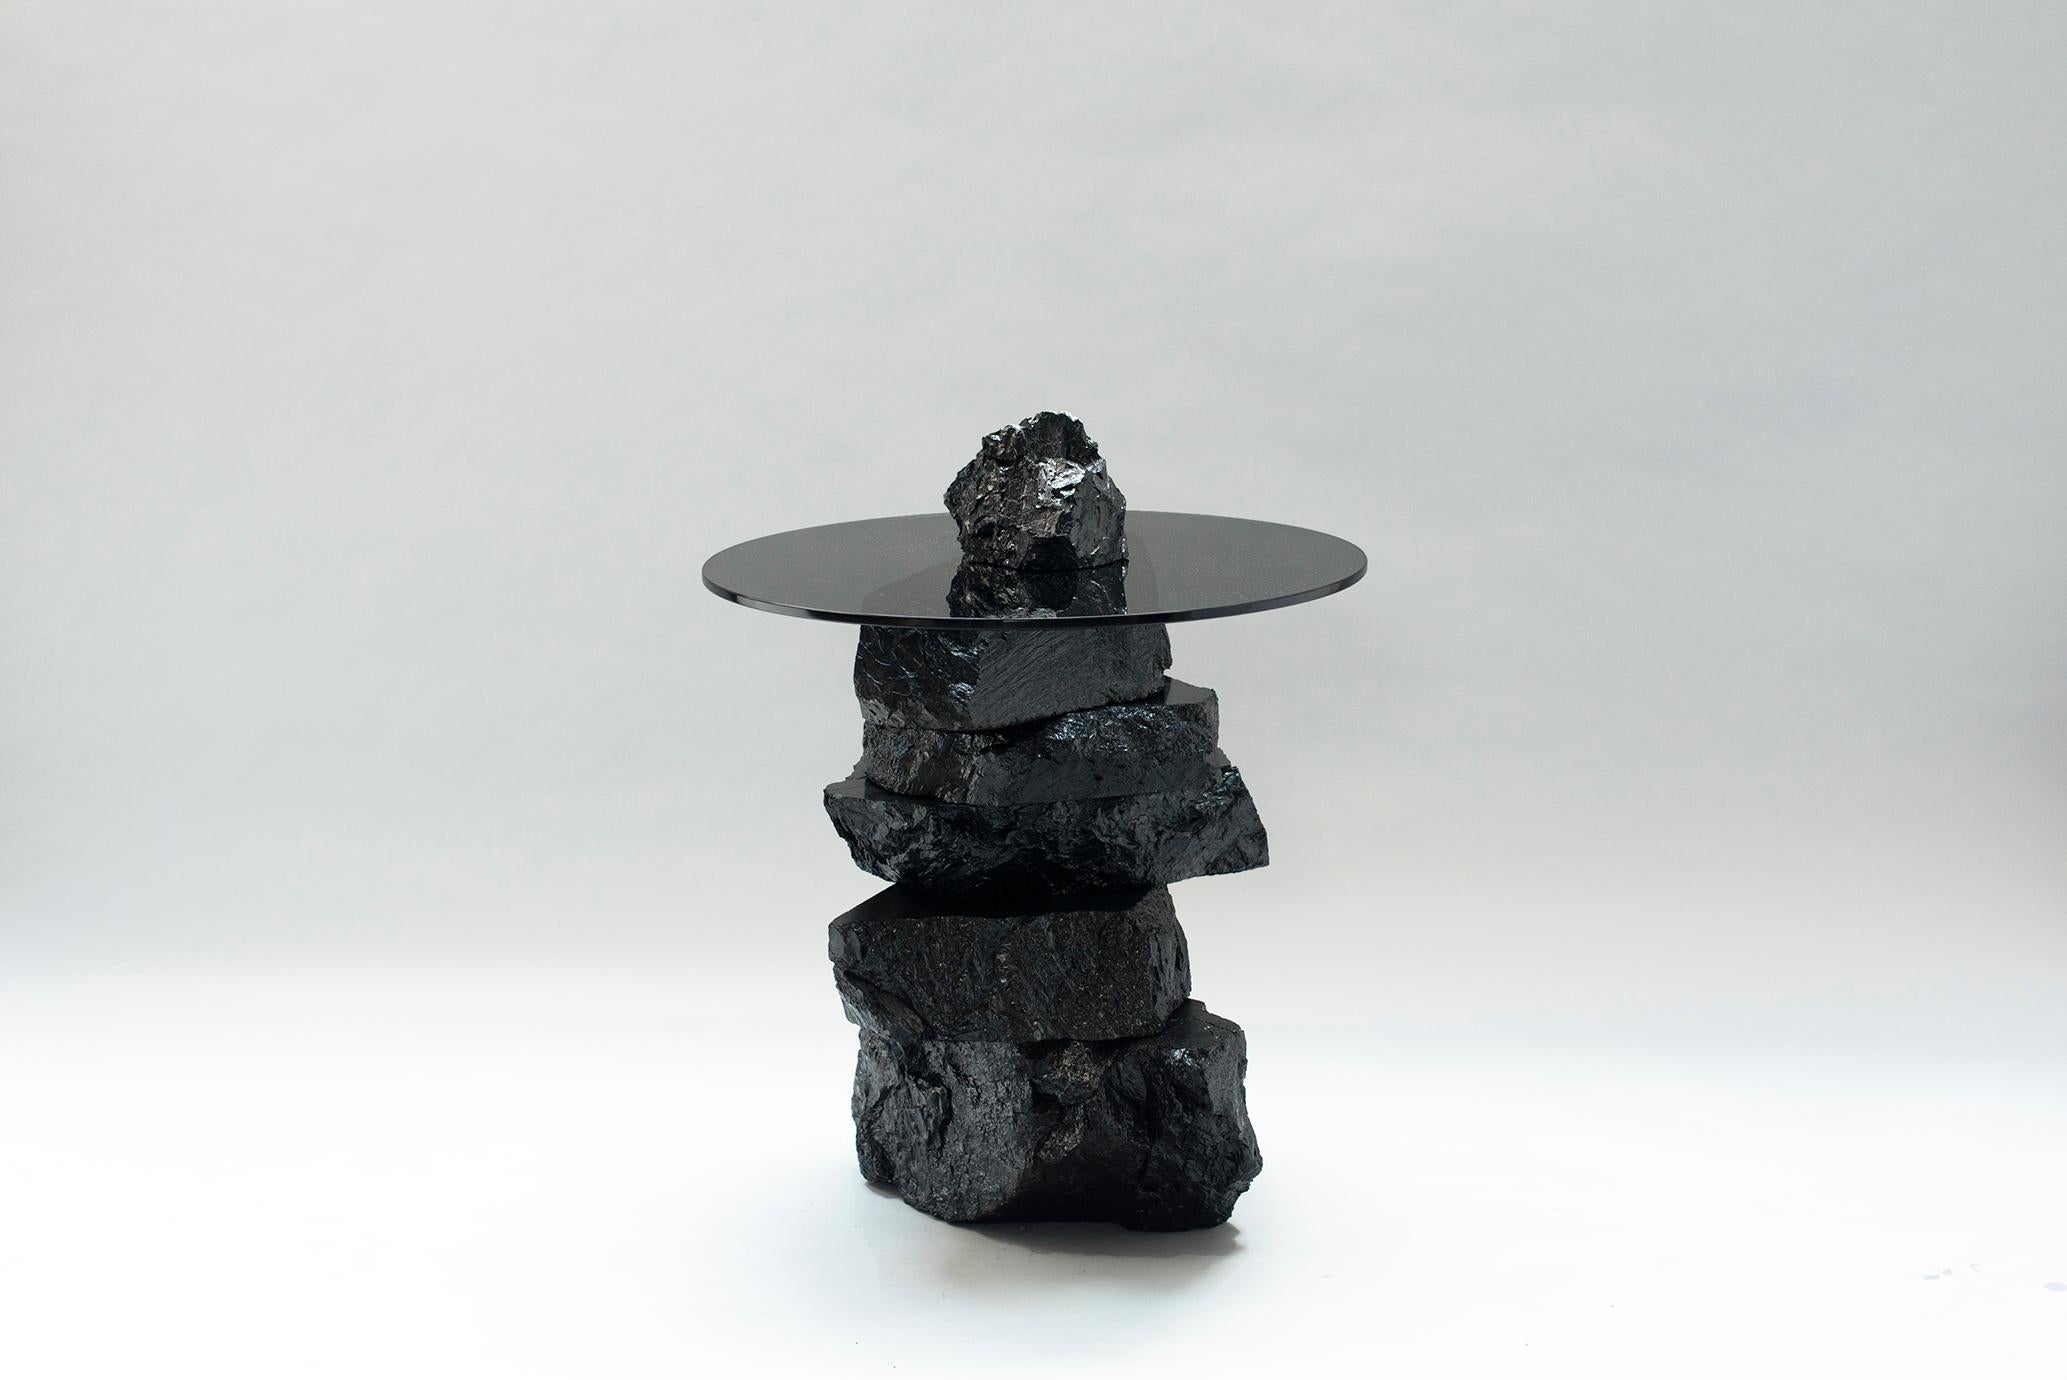 Table d'appoint 019 de Jesper Eriksson
Dimensions : D&H 60 x L 60 x H 70 cm 
Matériaux : charbon anthracite, verre trempé
Poids : 75 kg

Jesper Eriksson (né en 1990 à Paris) est un artiste et un designer basé à Londres, qui s'intéresse au travail